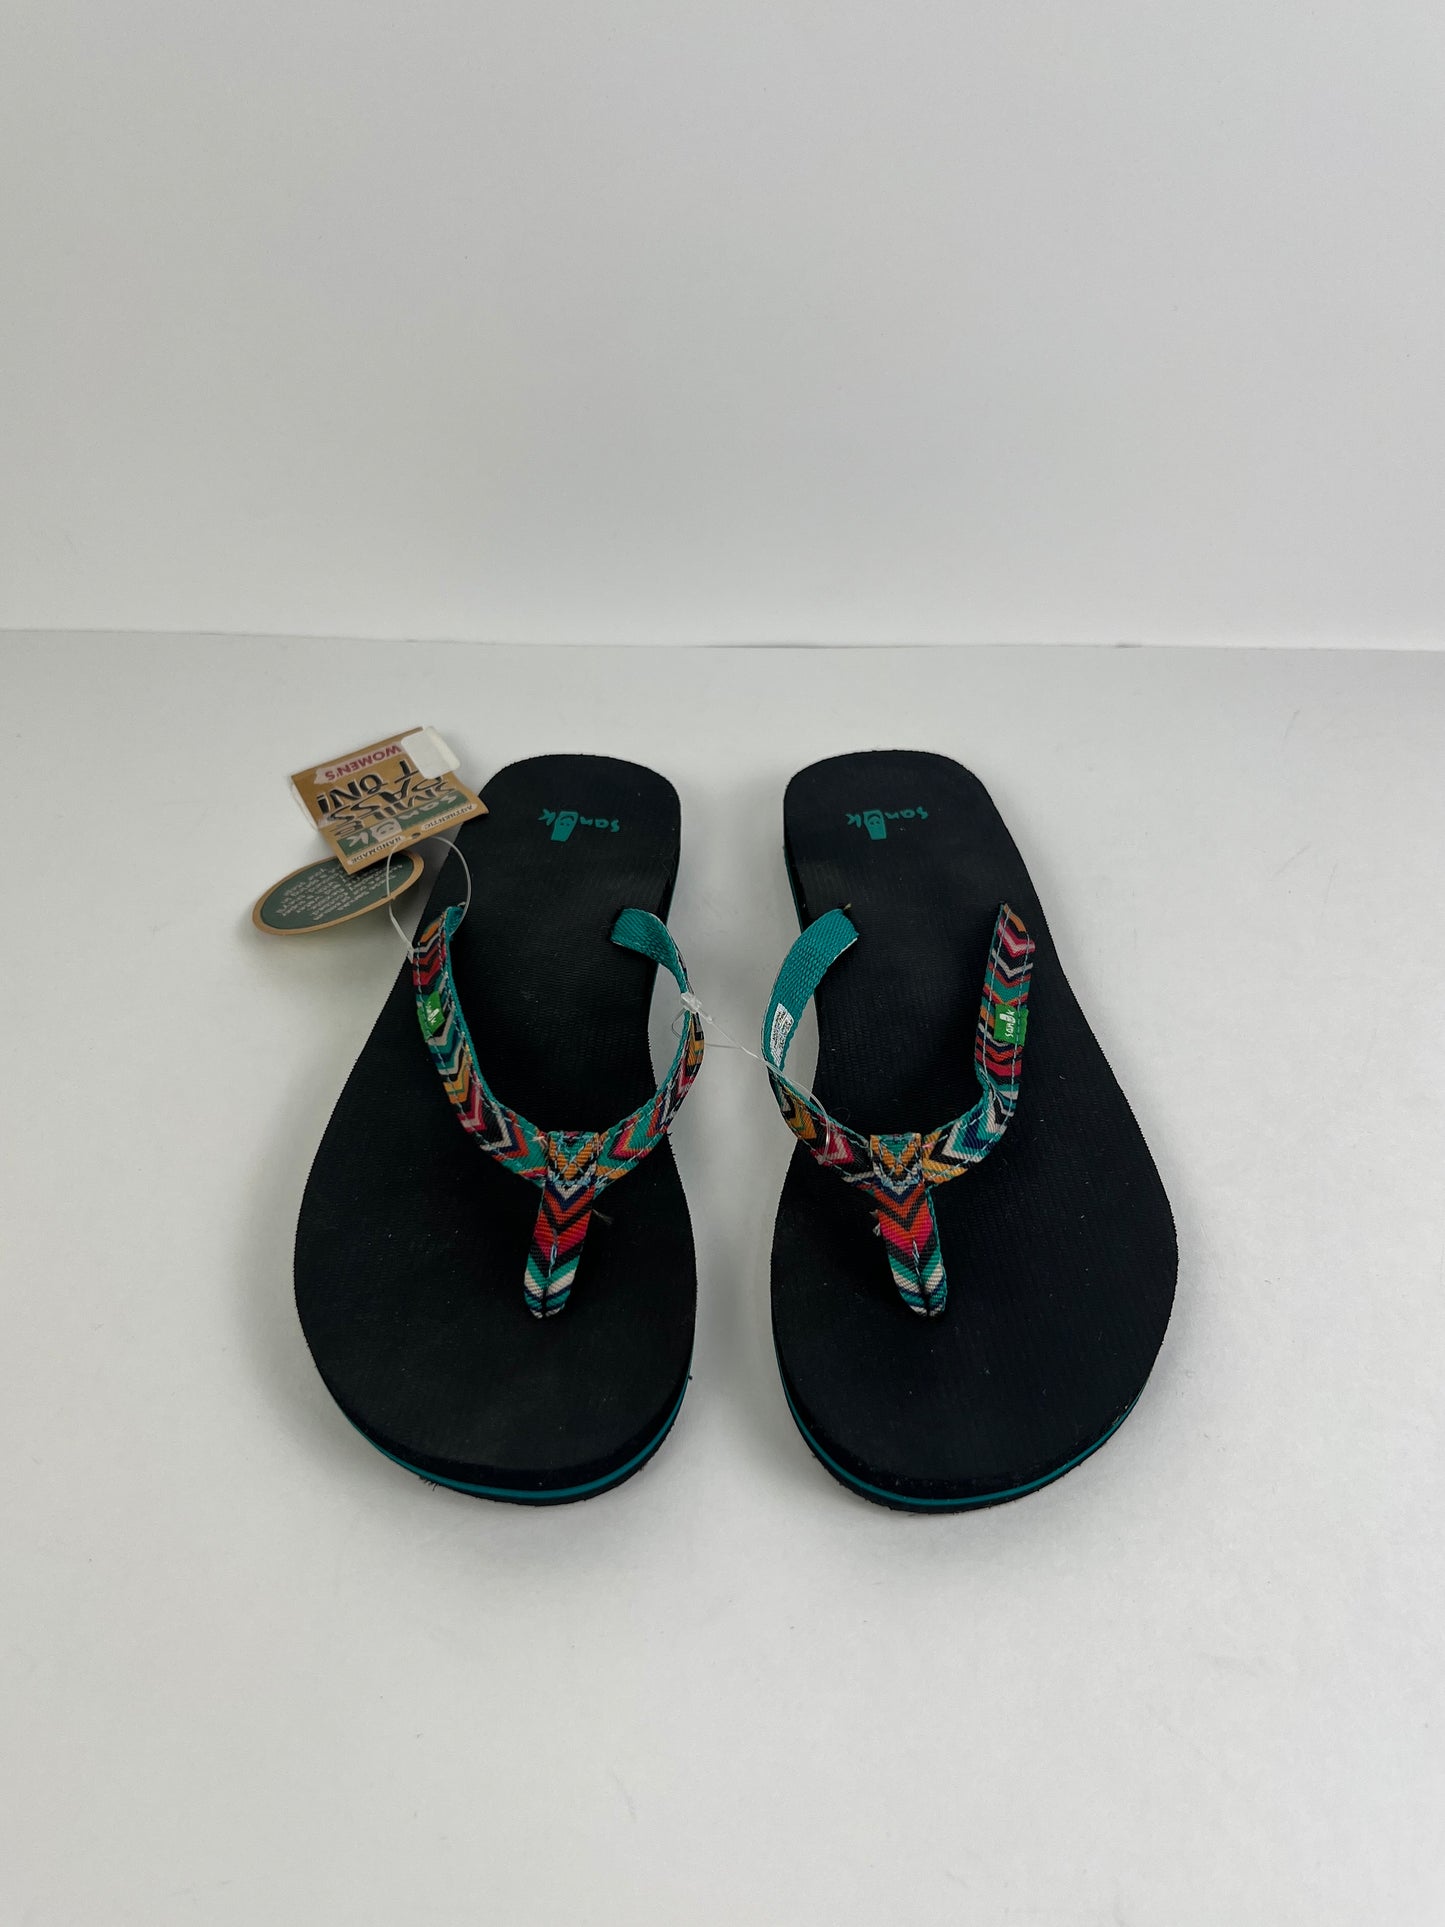 Sandals Flip Flops By Sanuk  Size: 6